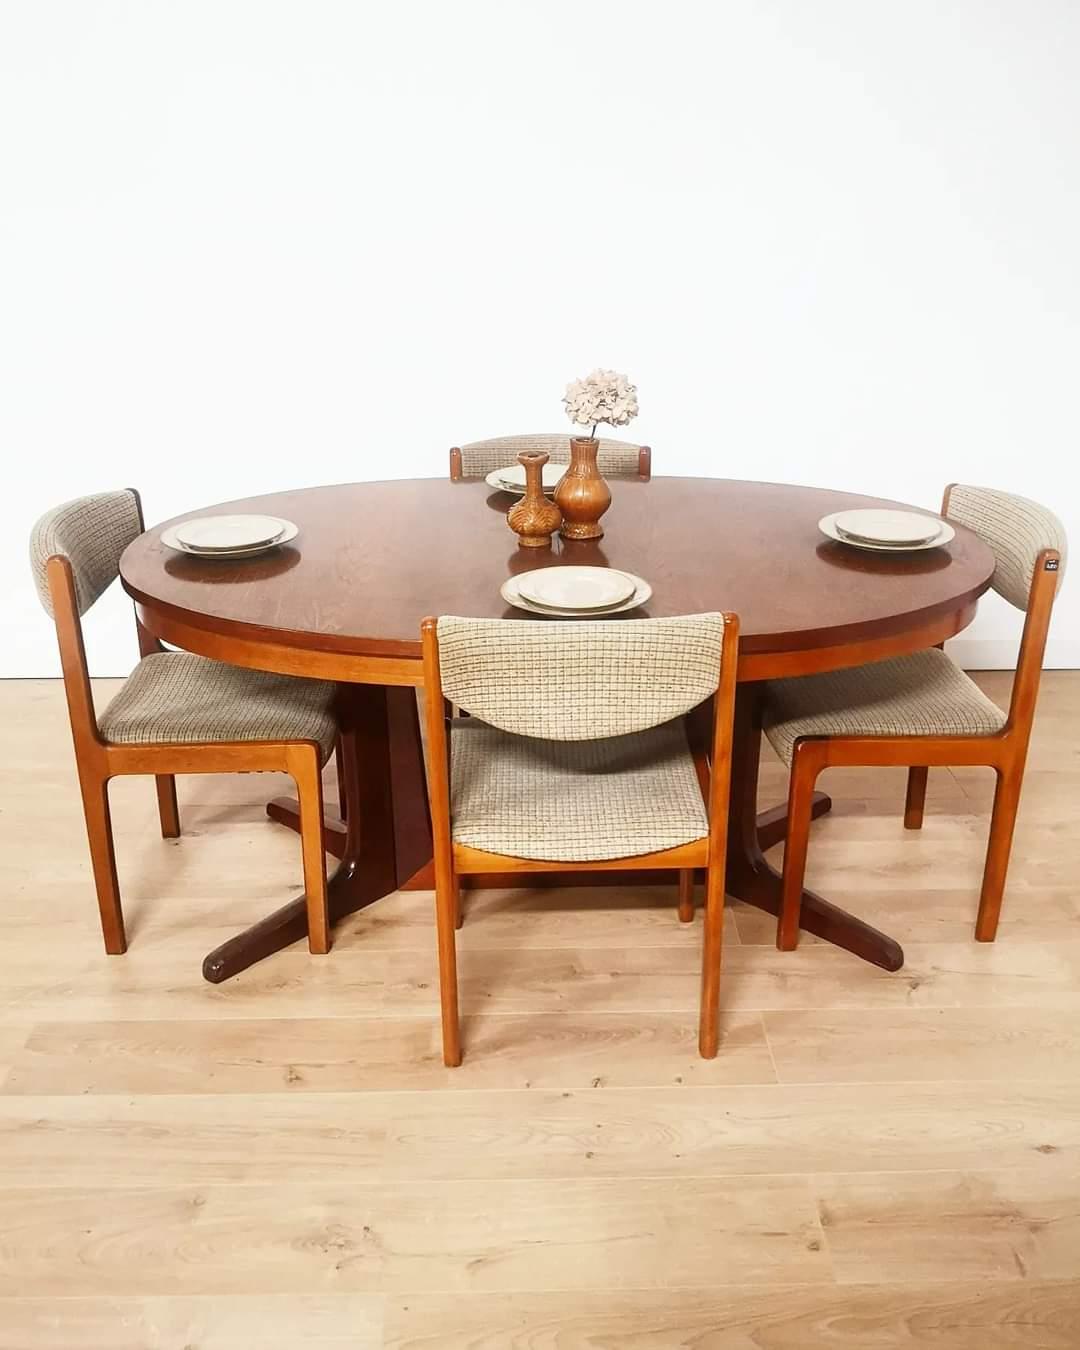 Très belle table à manger scandinave ovale en bois, des années 70, avec double piètement en fourche réuni par une entretoise. Les rallonges ne sont pas fournies mais la table peut en accueillir 2, pour passer de 6/8 à 10/12 personnes. En dehors du